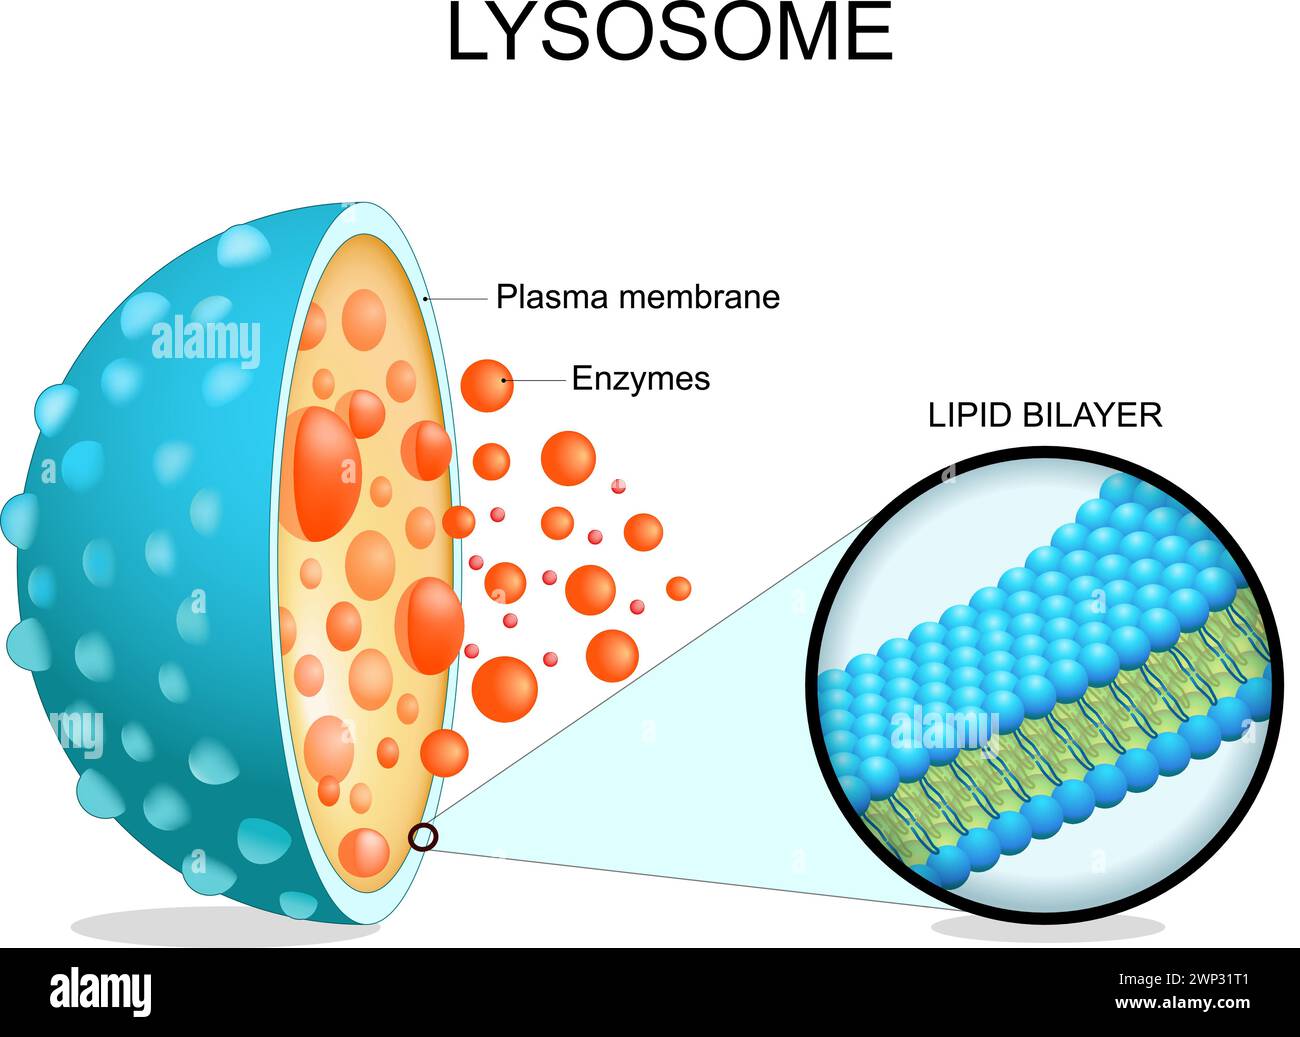 Lysosomenanatomie. Querschnitt einer Zellorganelle. Nahaufnahme einer Lipidbilayer-Membran, hydrolytischer Enzyme, Transportproteine. Autophagie. Vektor i Stock Vektor